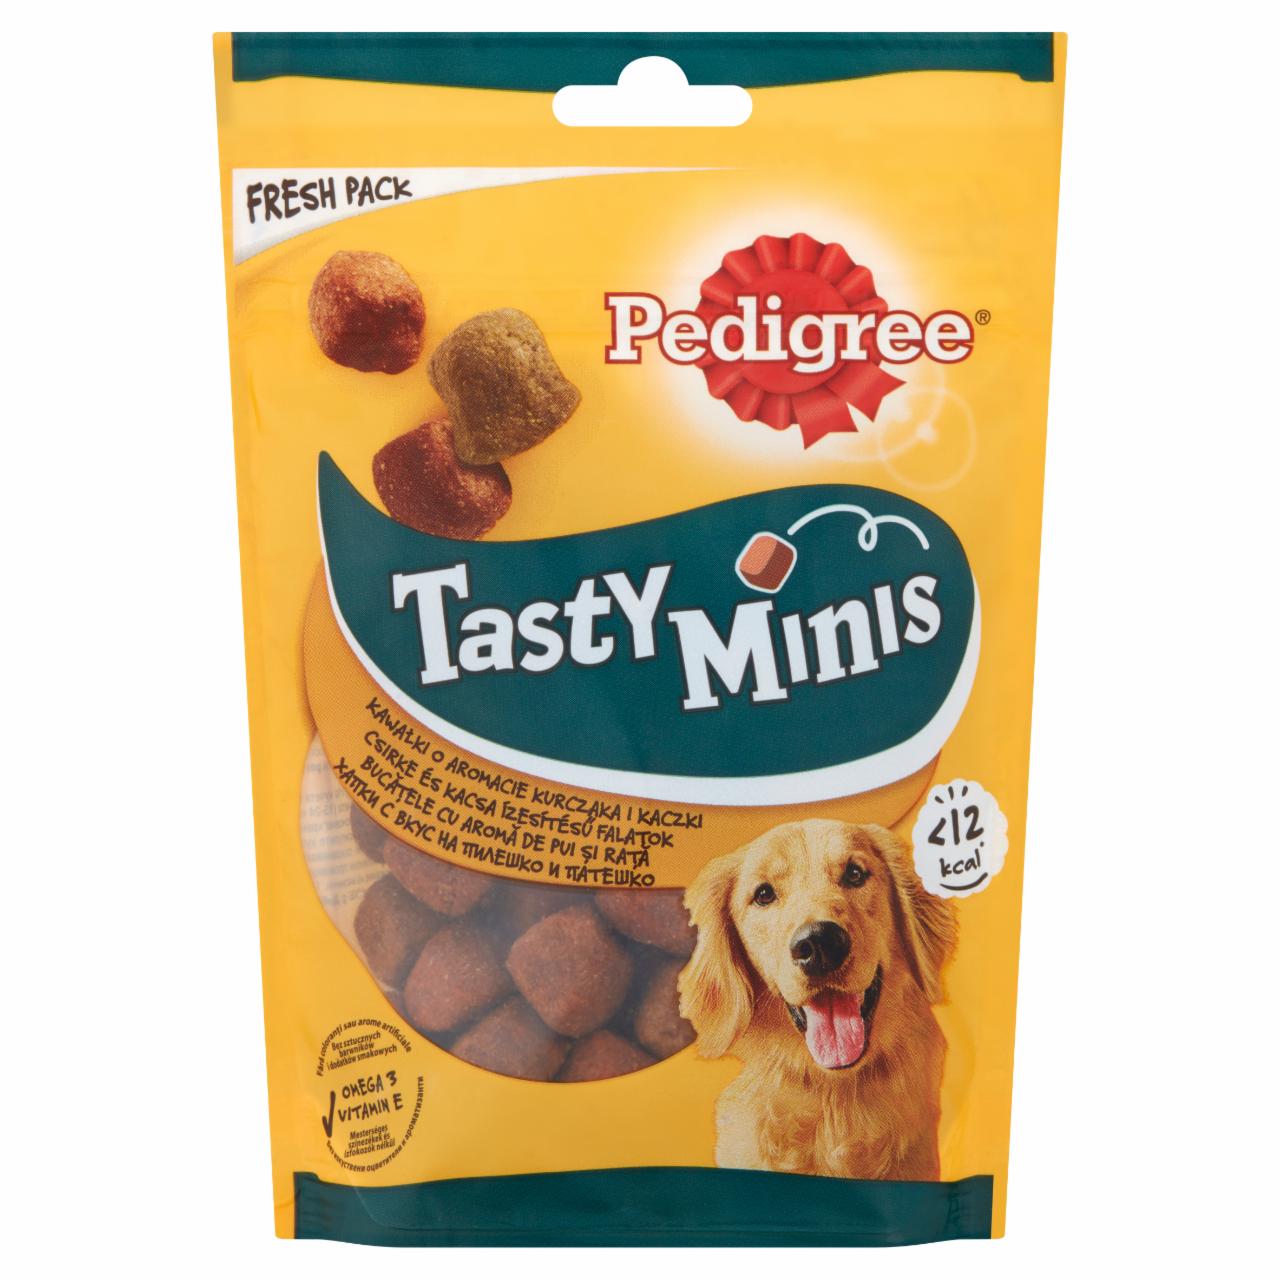 Képek - Pedigree Tasty Minis csirke és kacsa ízesítésű kiegészítő állateledel felnőtt kutyák számára 130 g